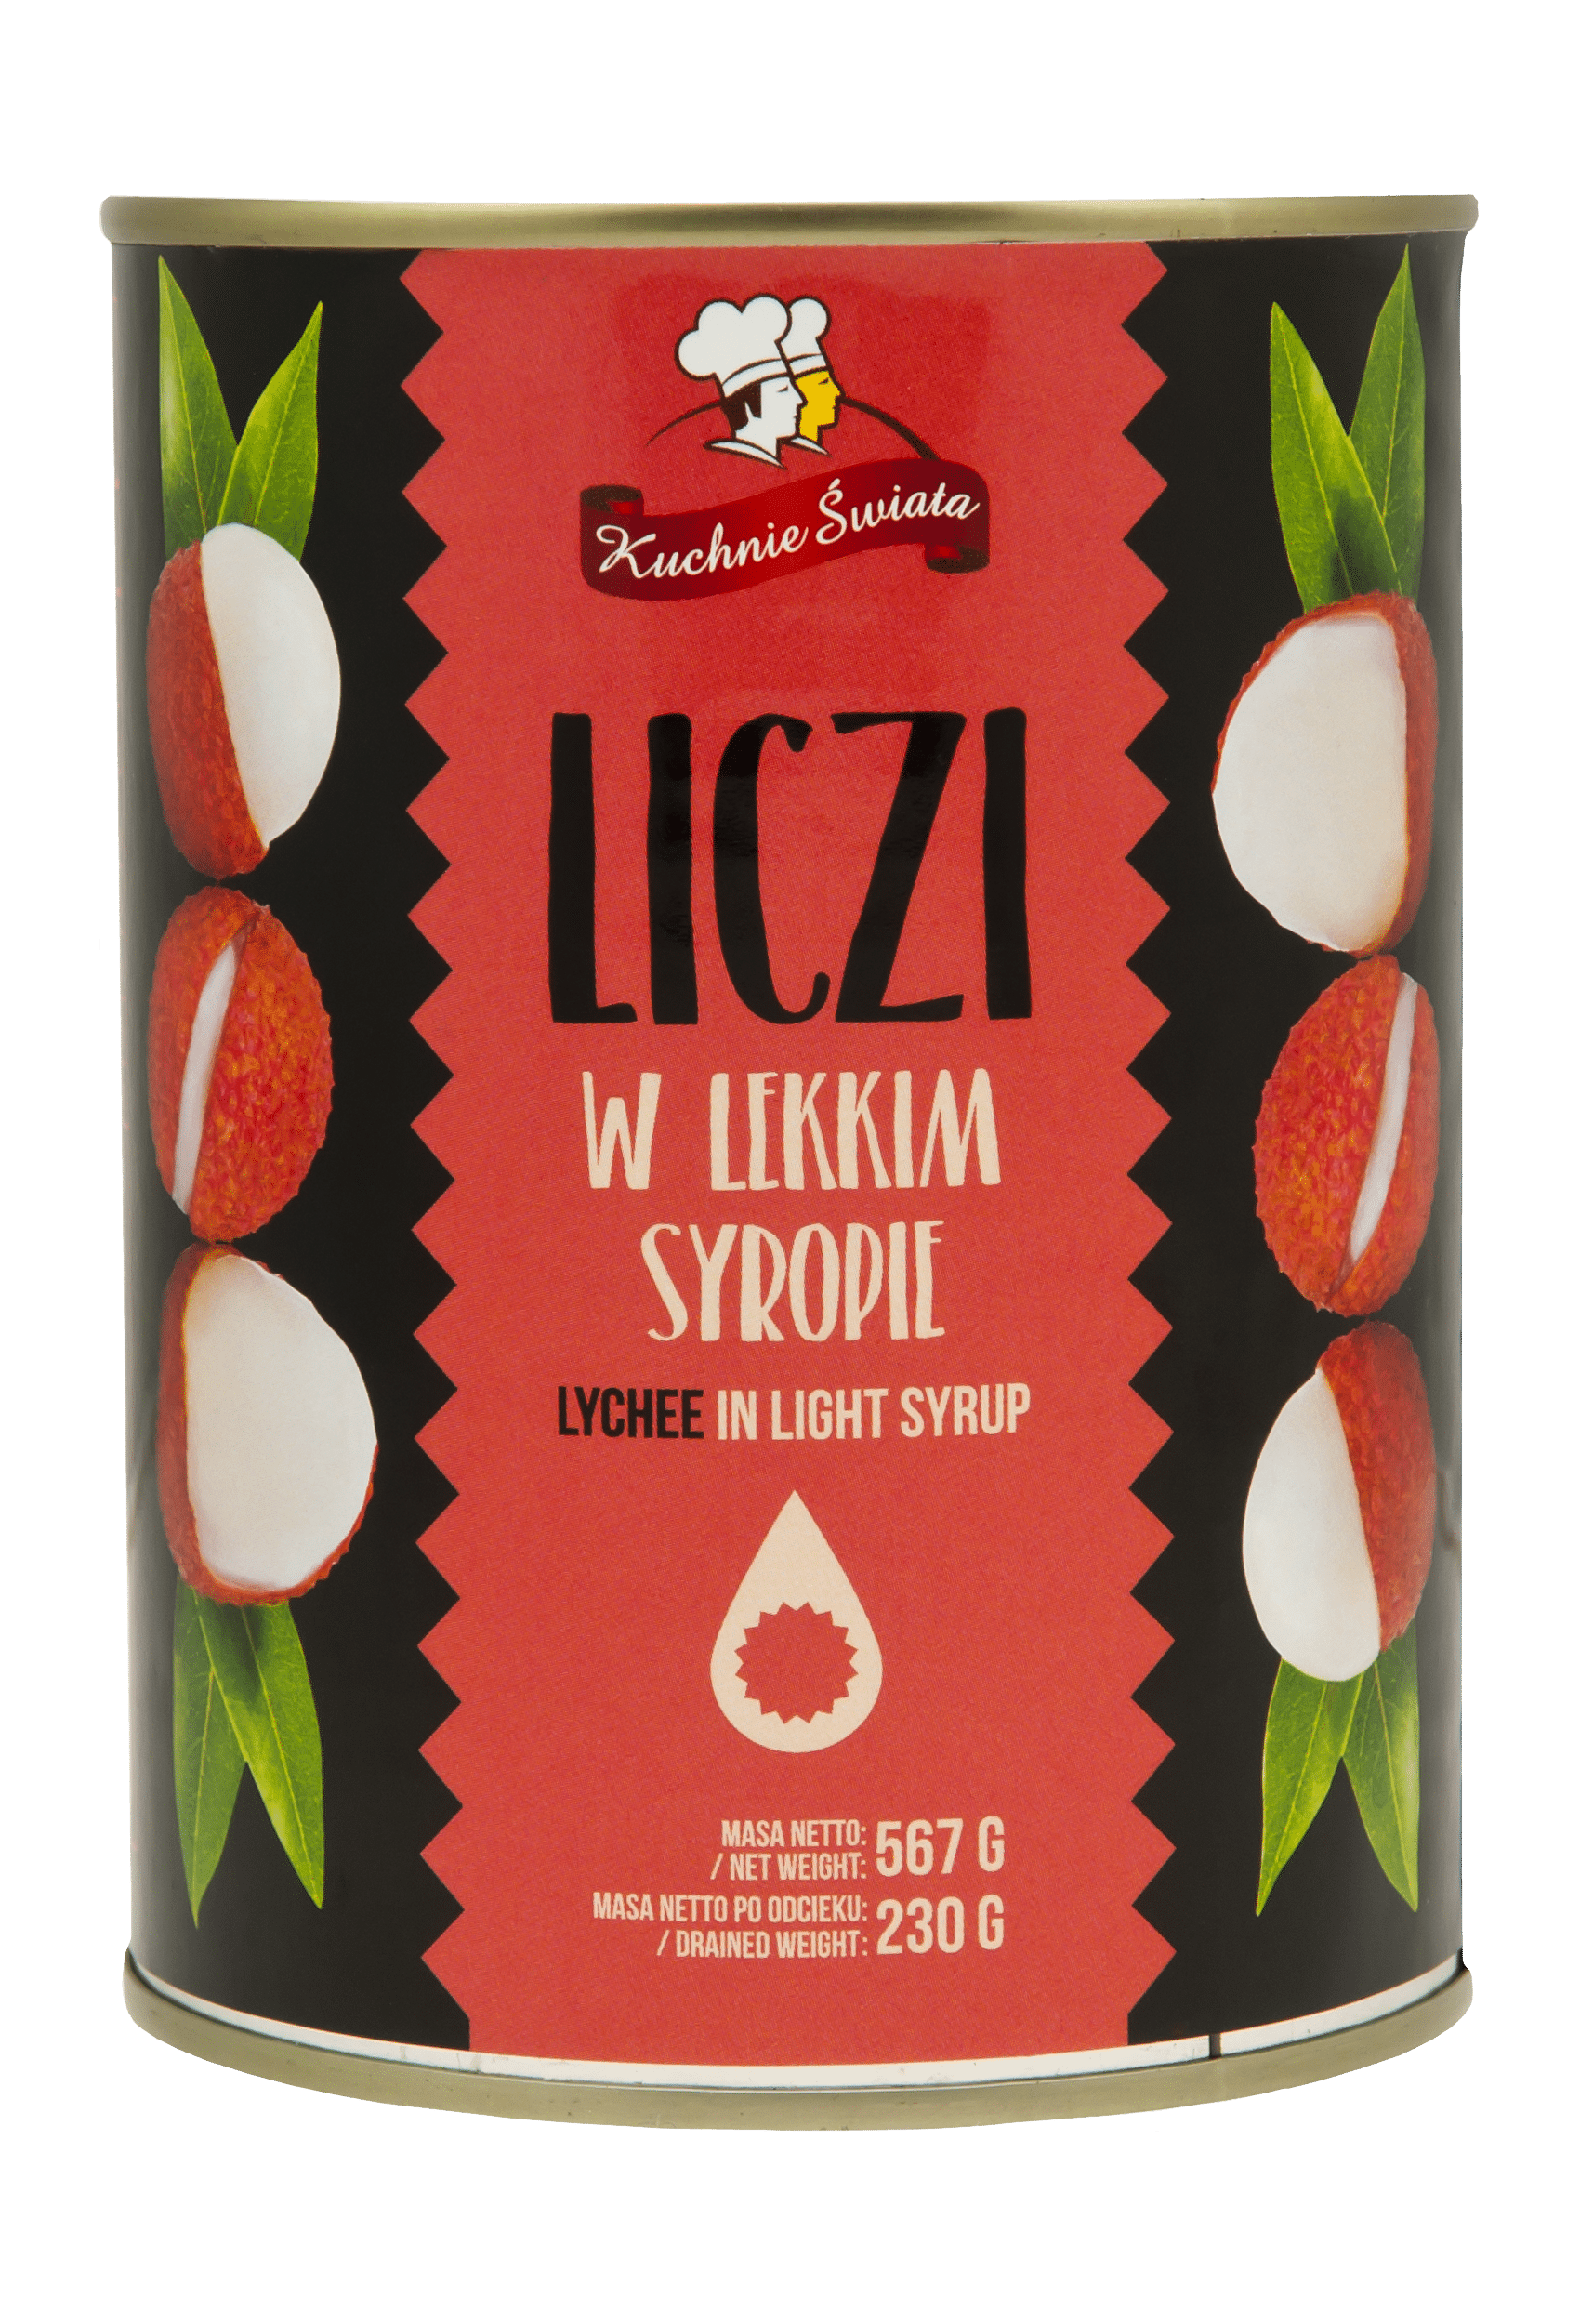 Liczi owoc (Lychee) w syropie 567g/24 Kuchnie Świata